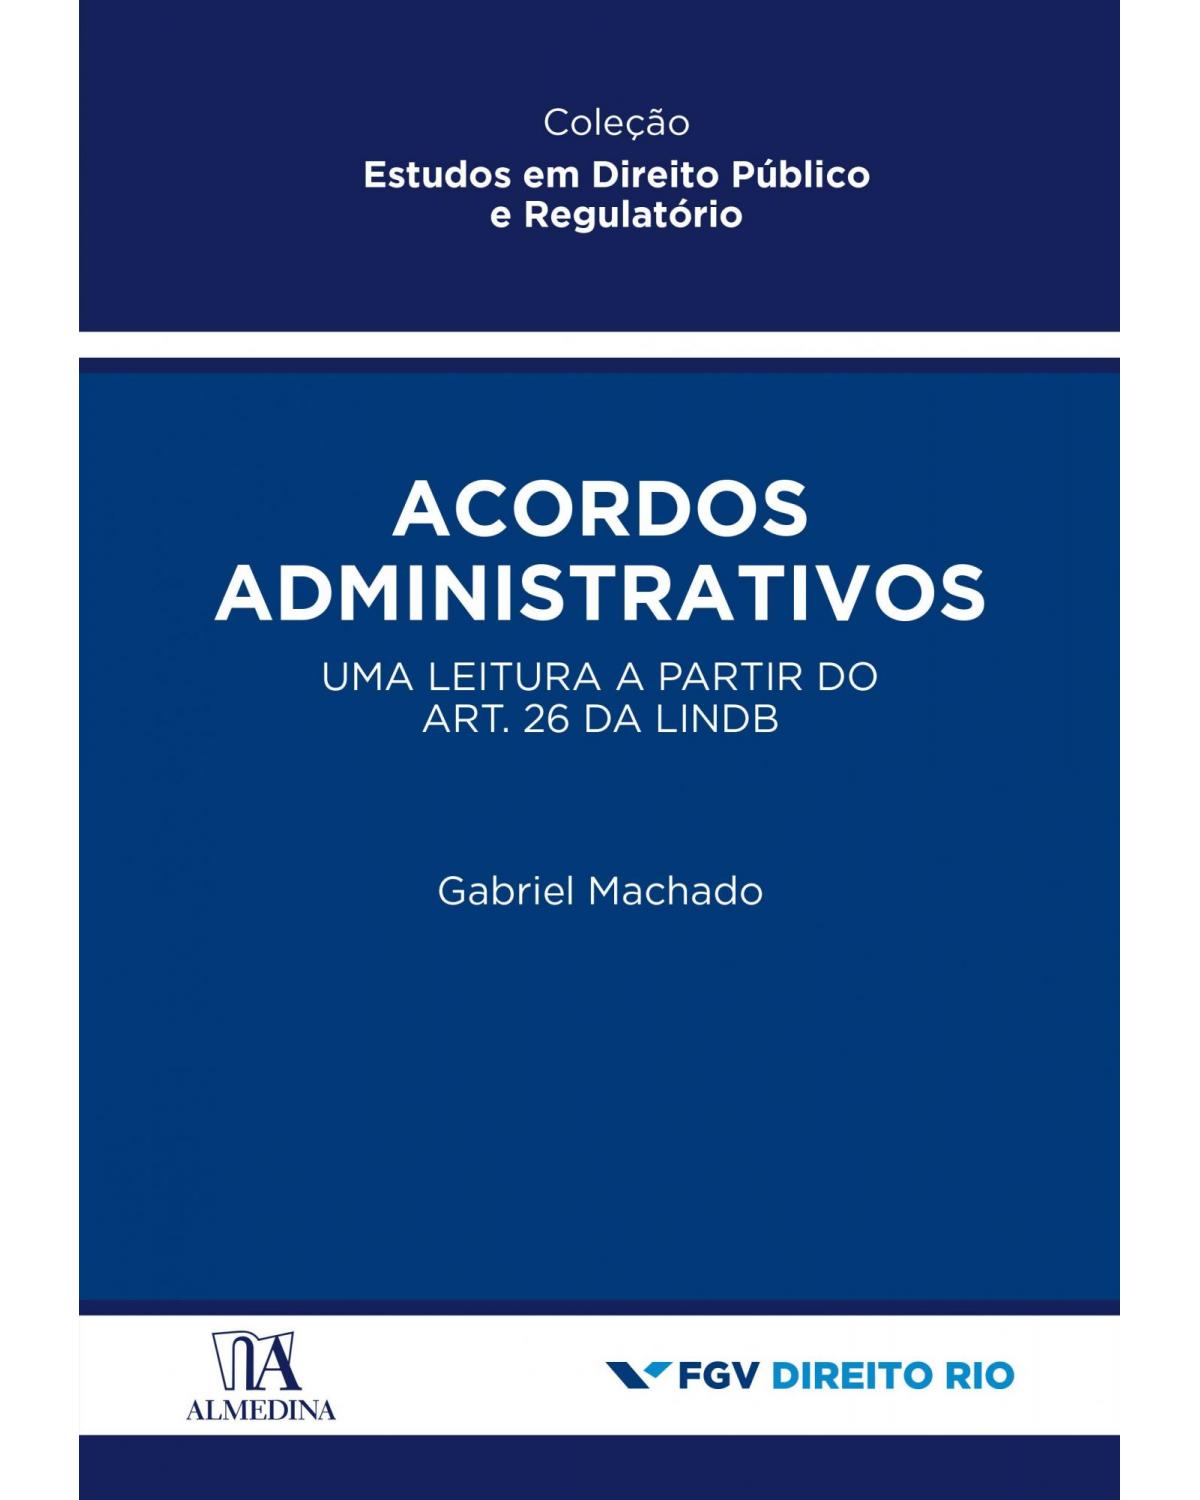 Acordos administrativos - uma leitura a partir do art. 26 da LINDB - 1ª Edição | 2021